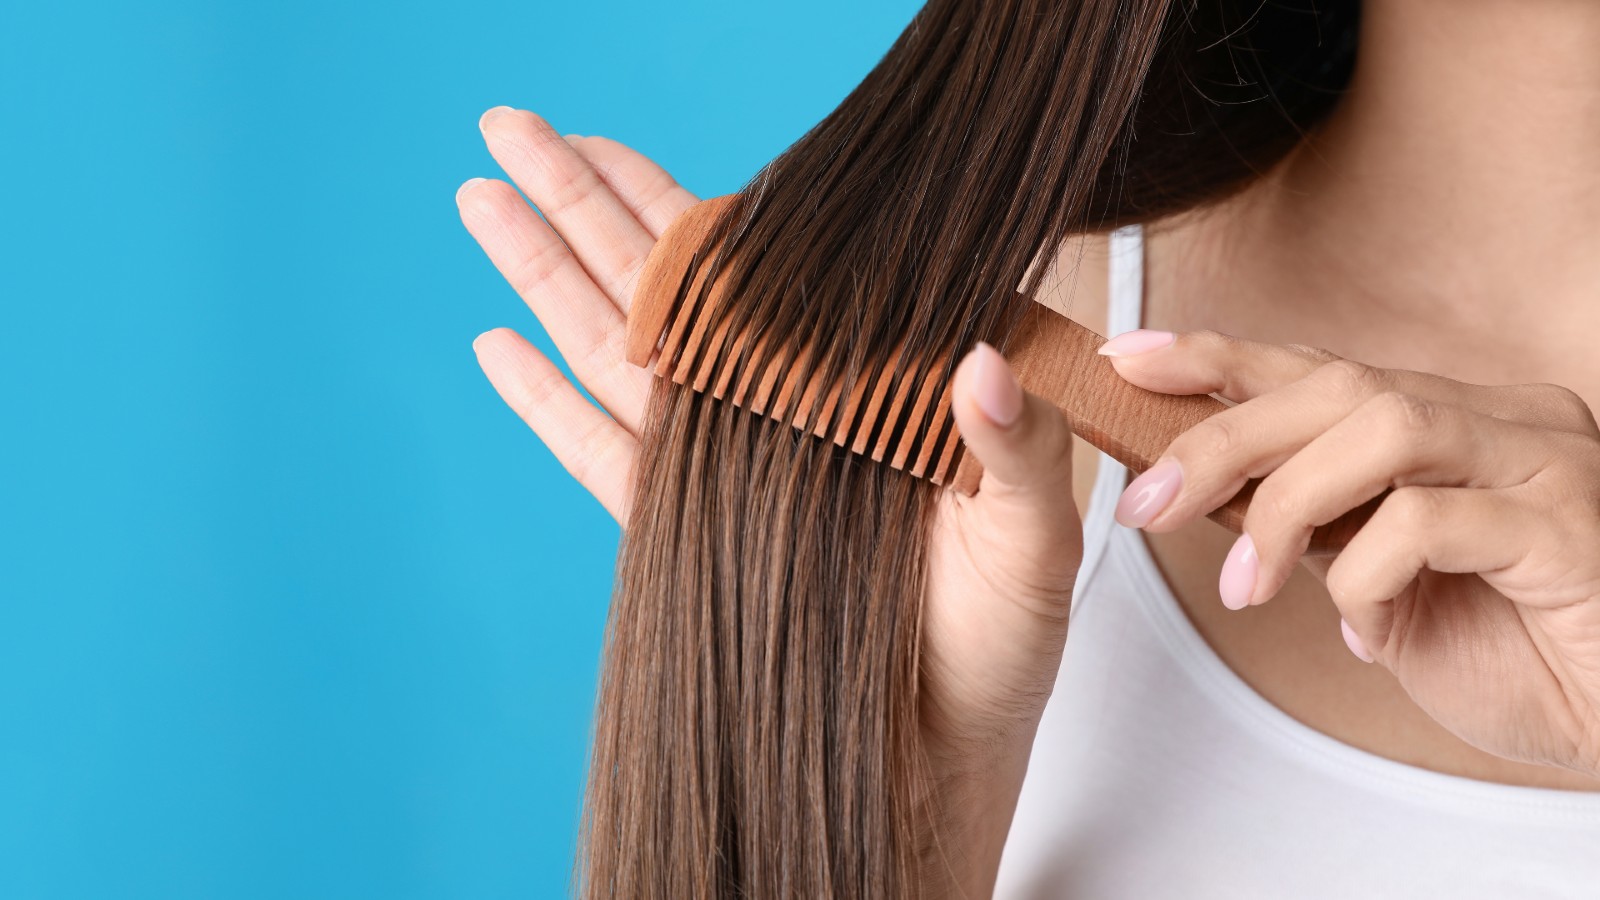 know these 8 tips for natural hair growth.नेचुरल हेयर ग्रोथ के लिए जानें  विशेषज्ञ की बताई 8 टिप्स। | HealthShots Hindi